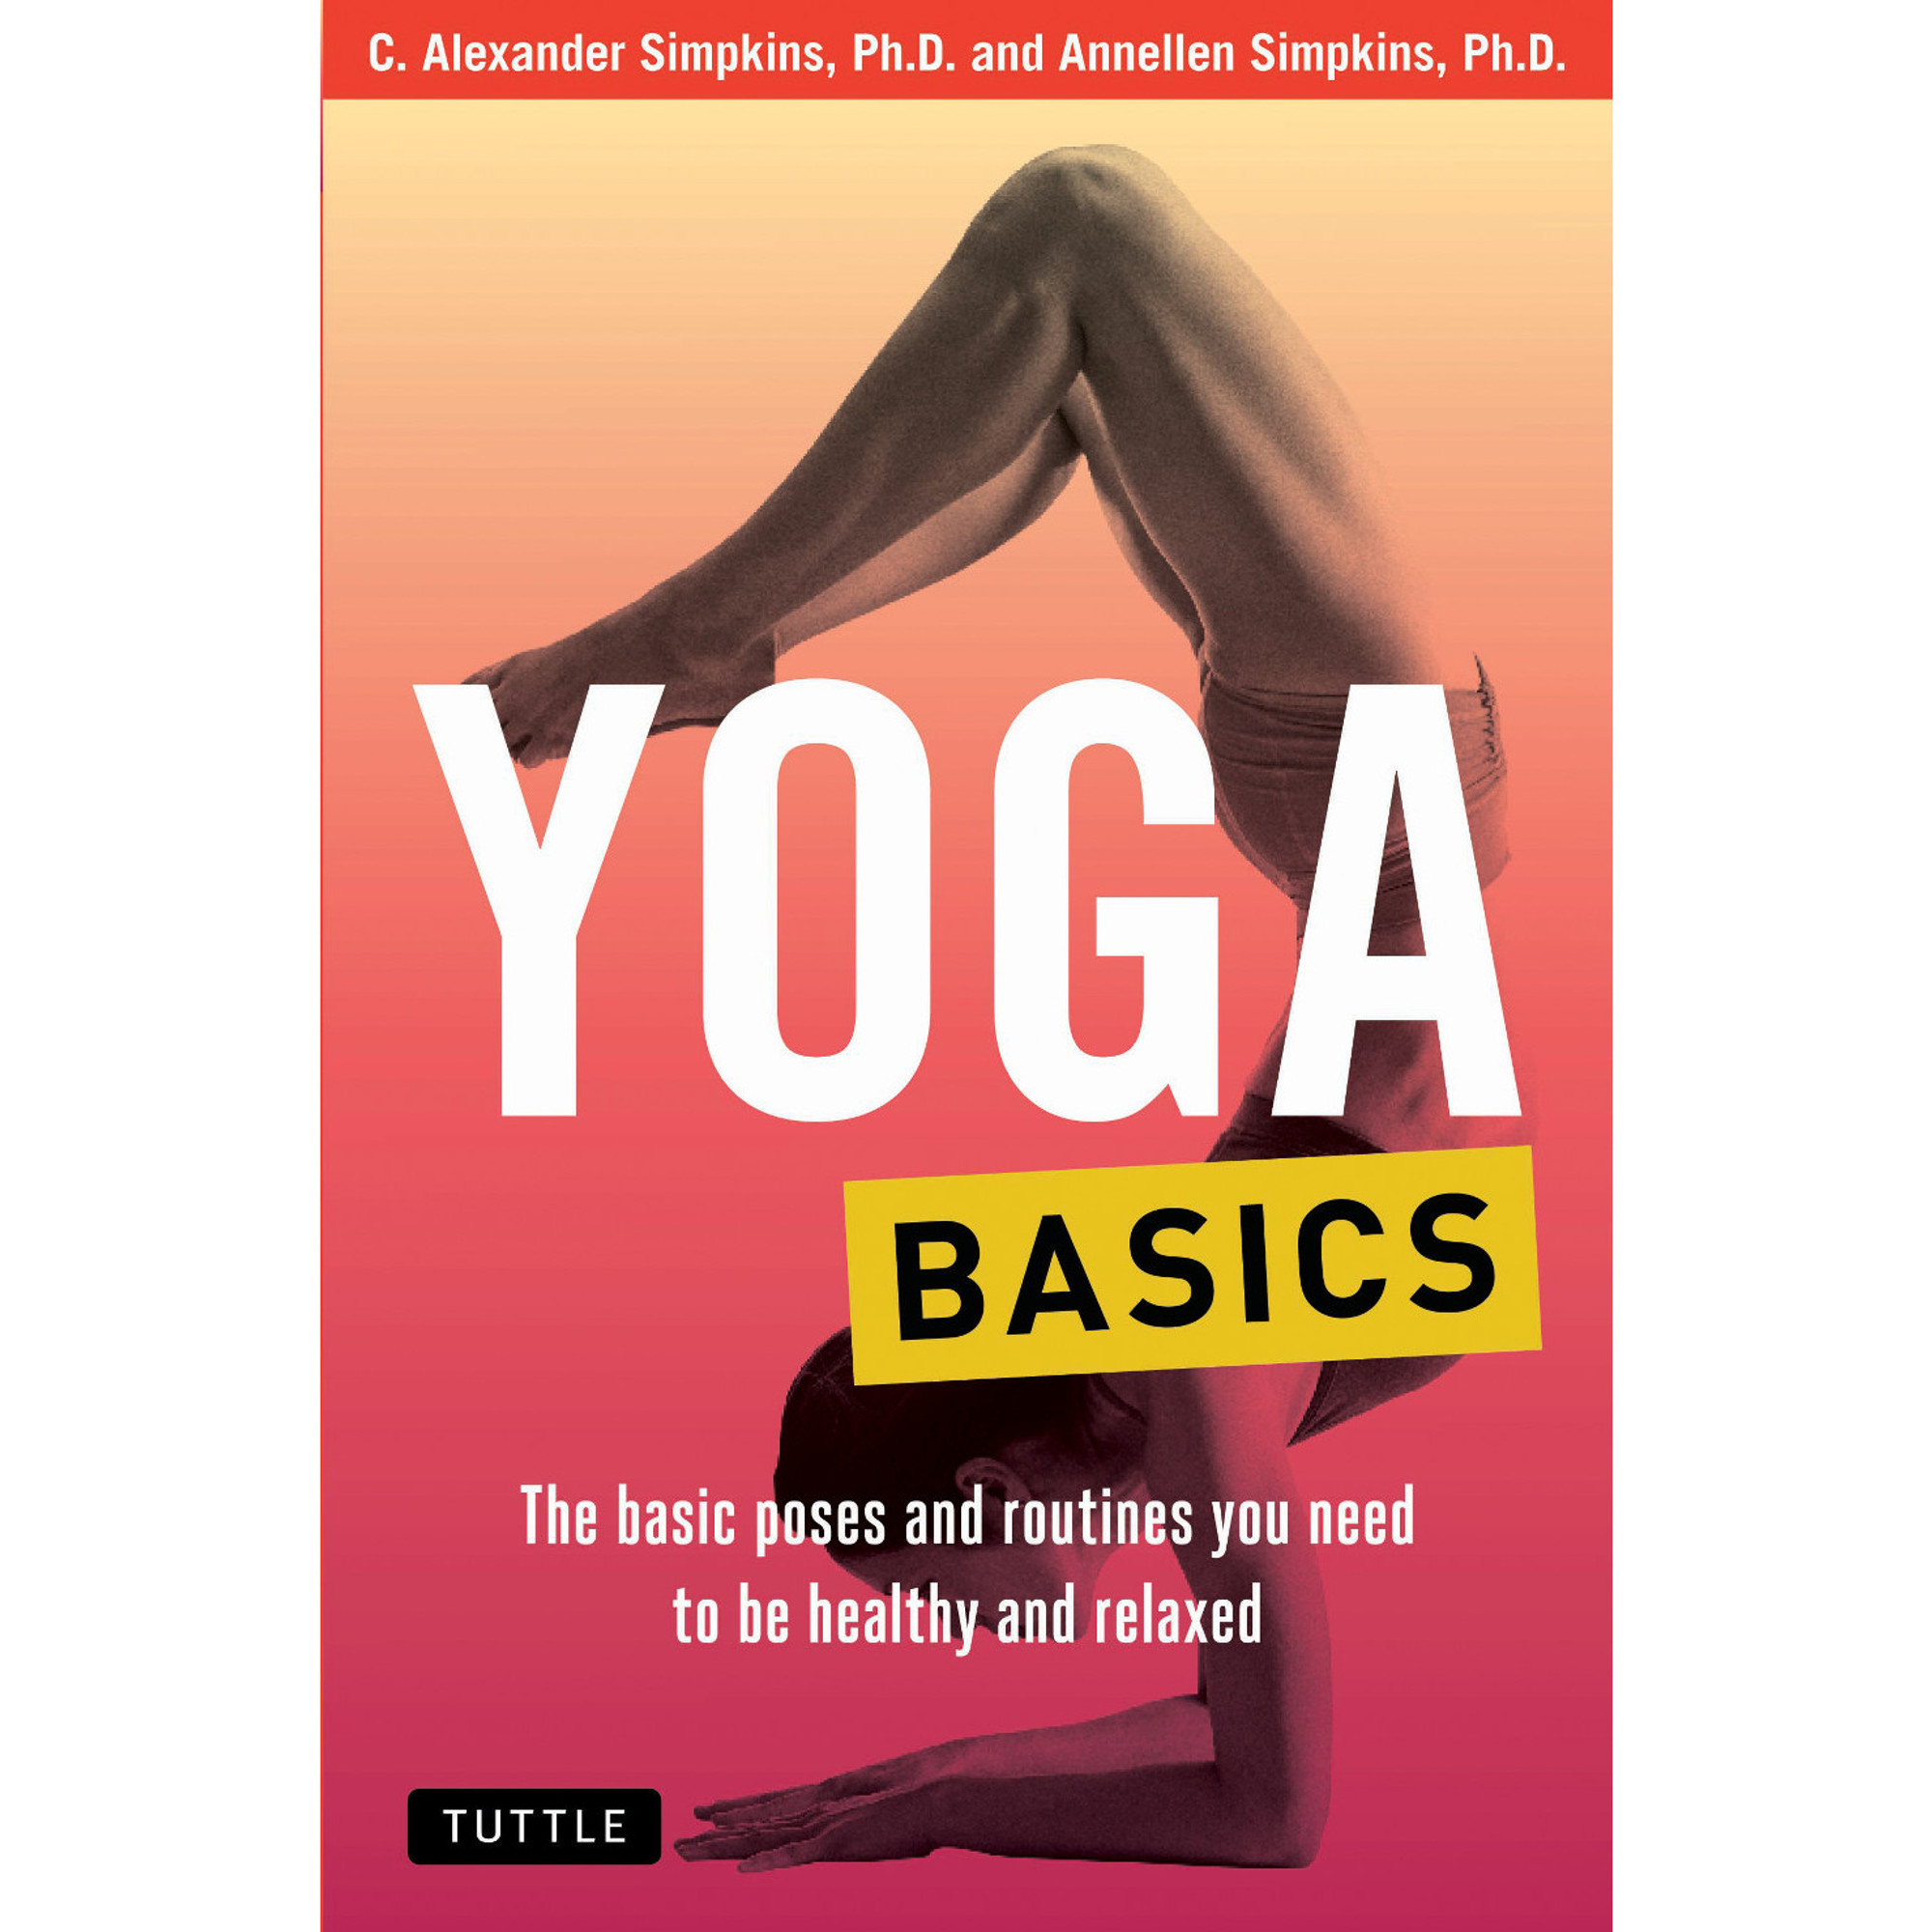 Yoga basics